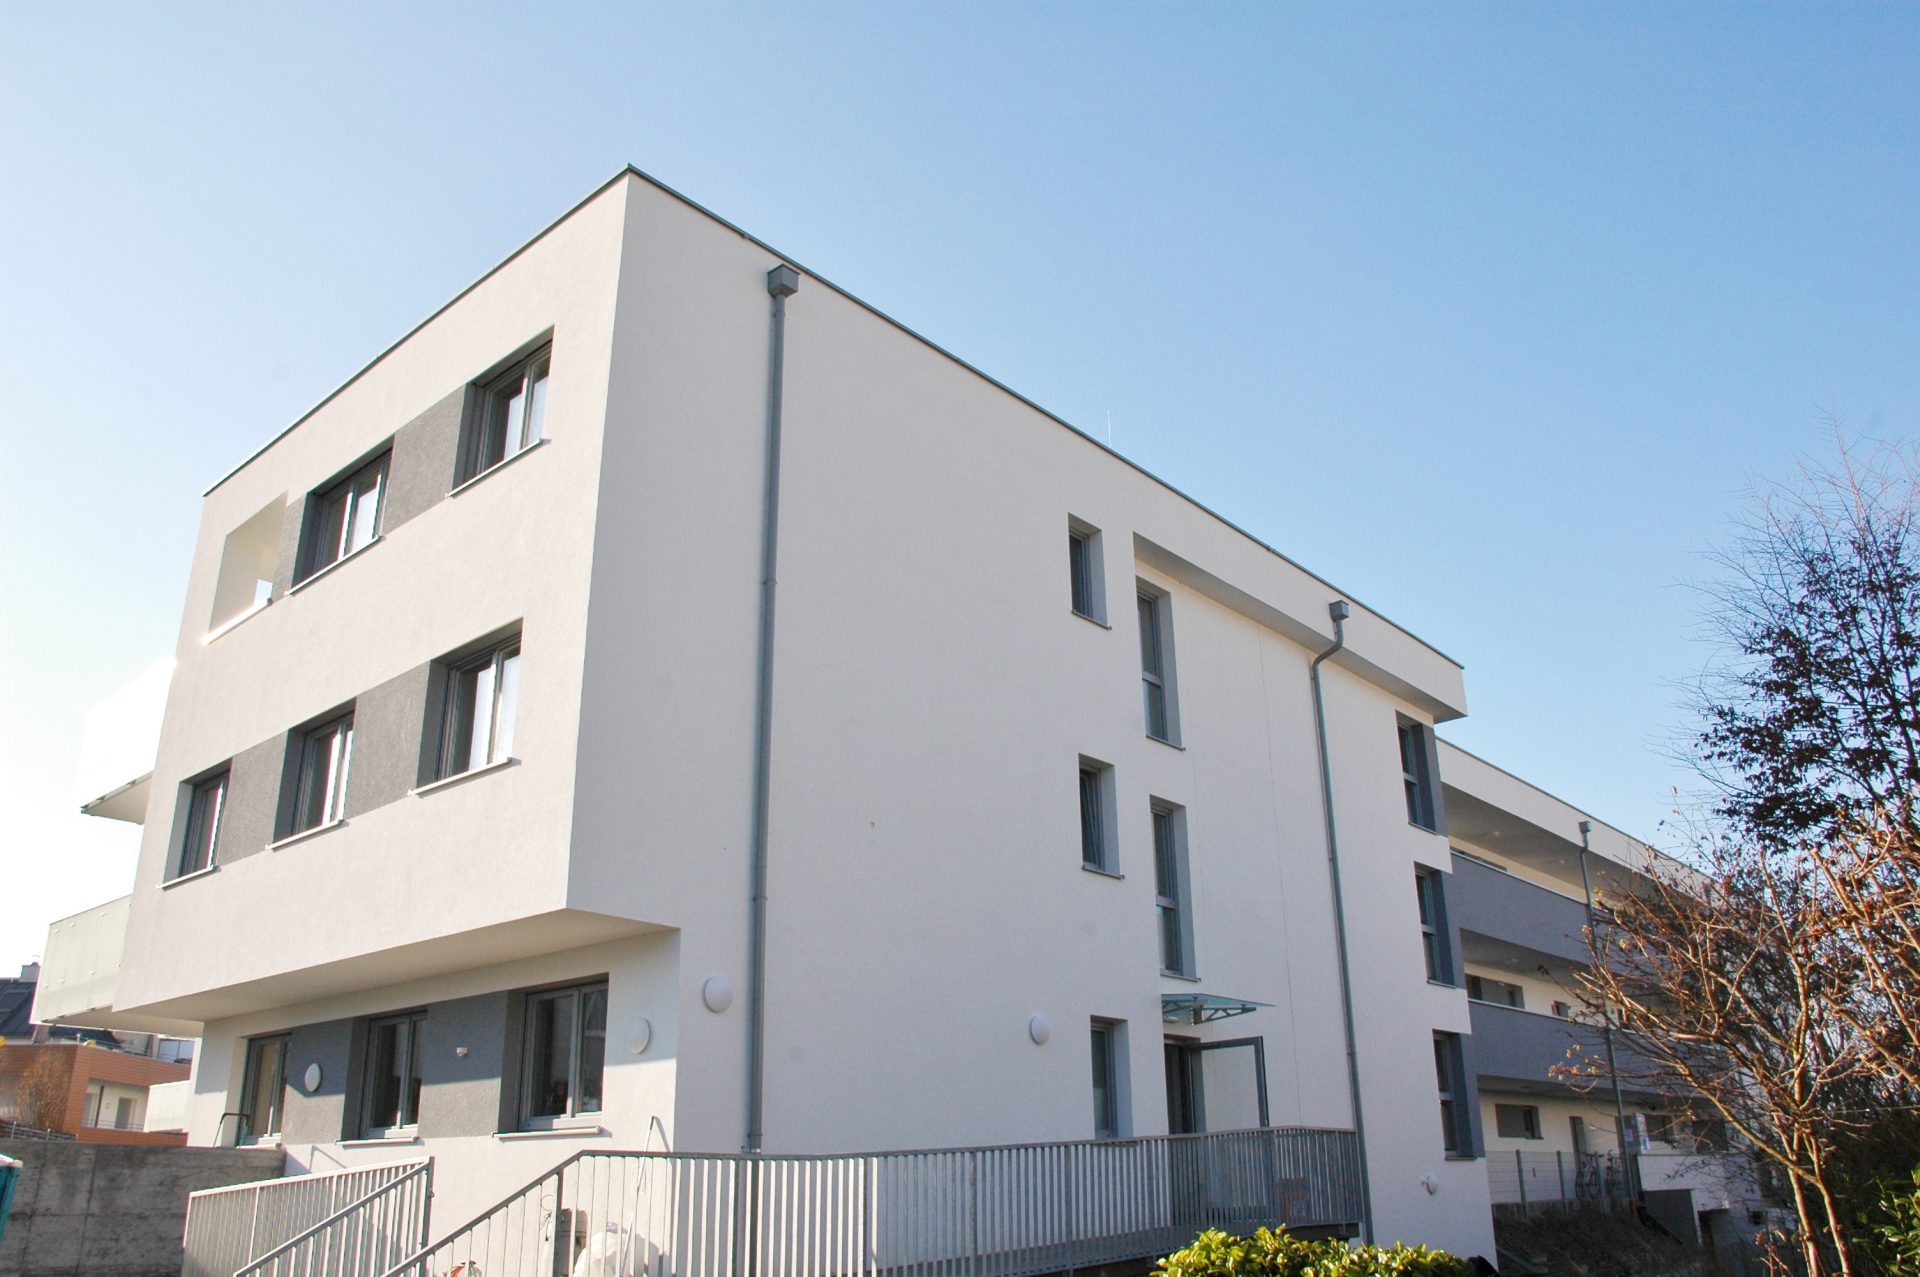 Eigentumswohnungen in Urfahr/Katzbach - Hentschläger Immobilien - Wohnbau